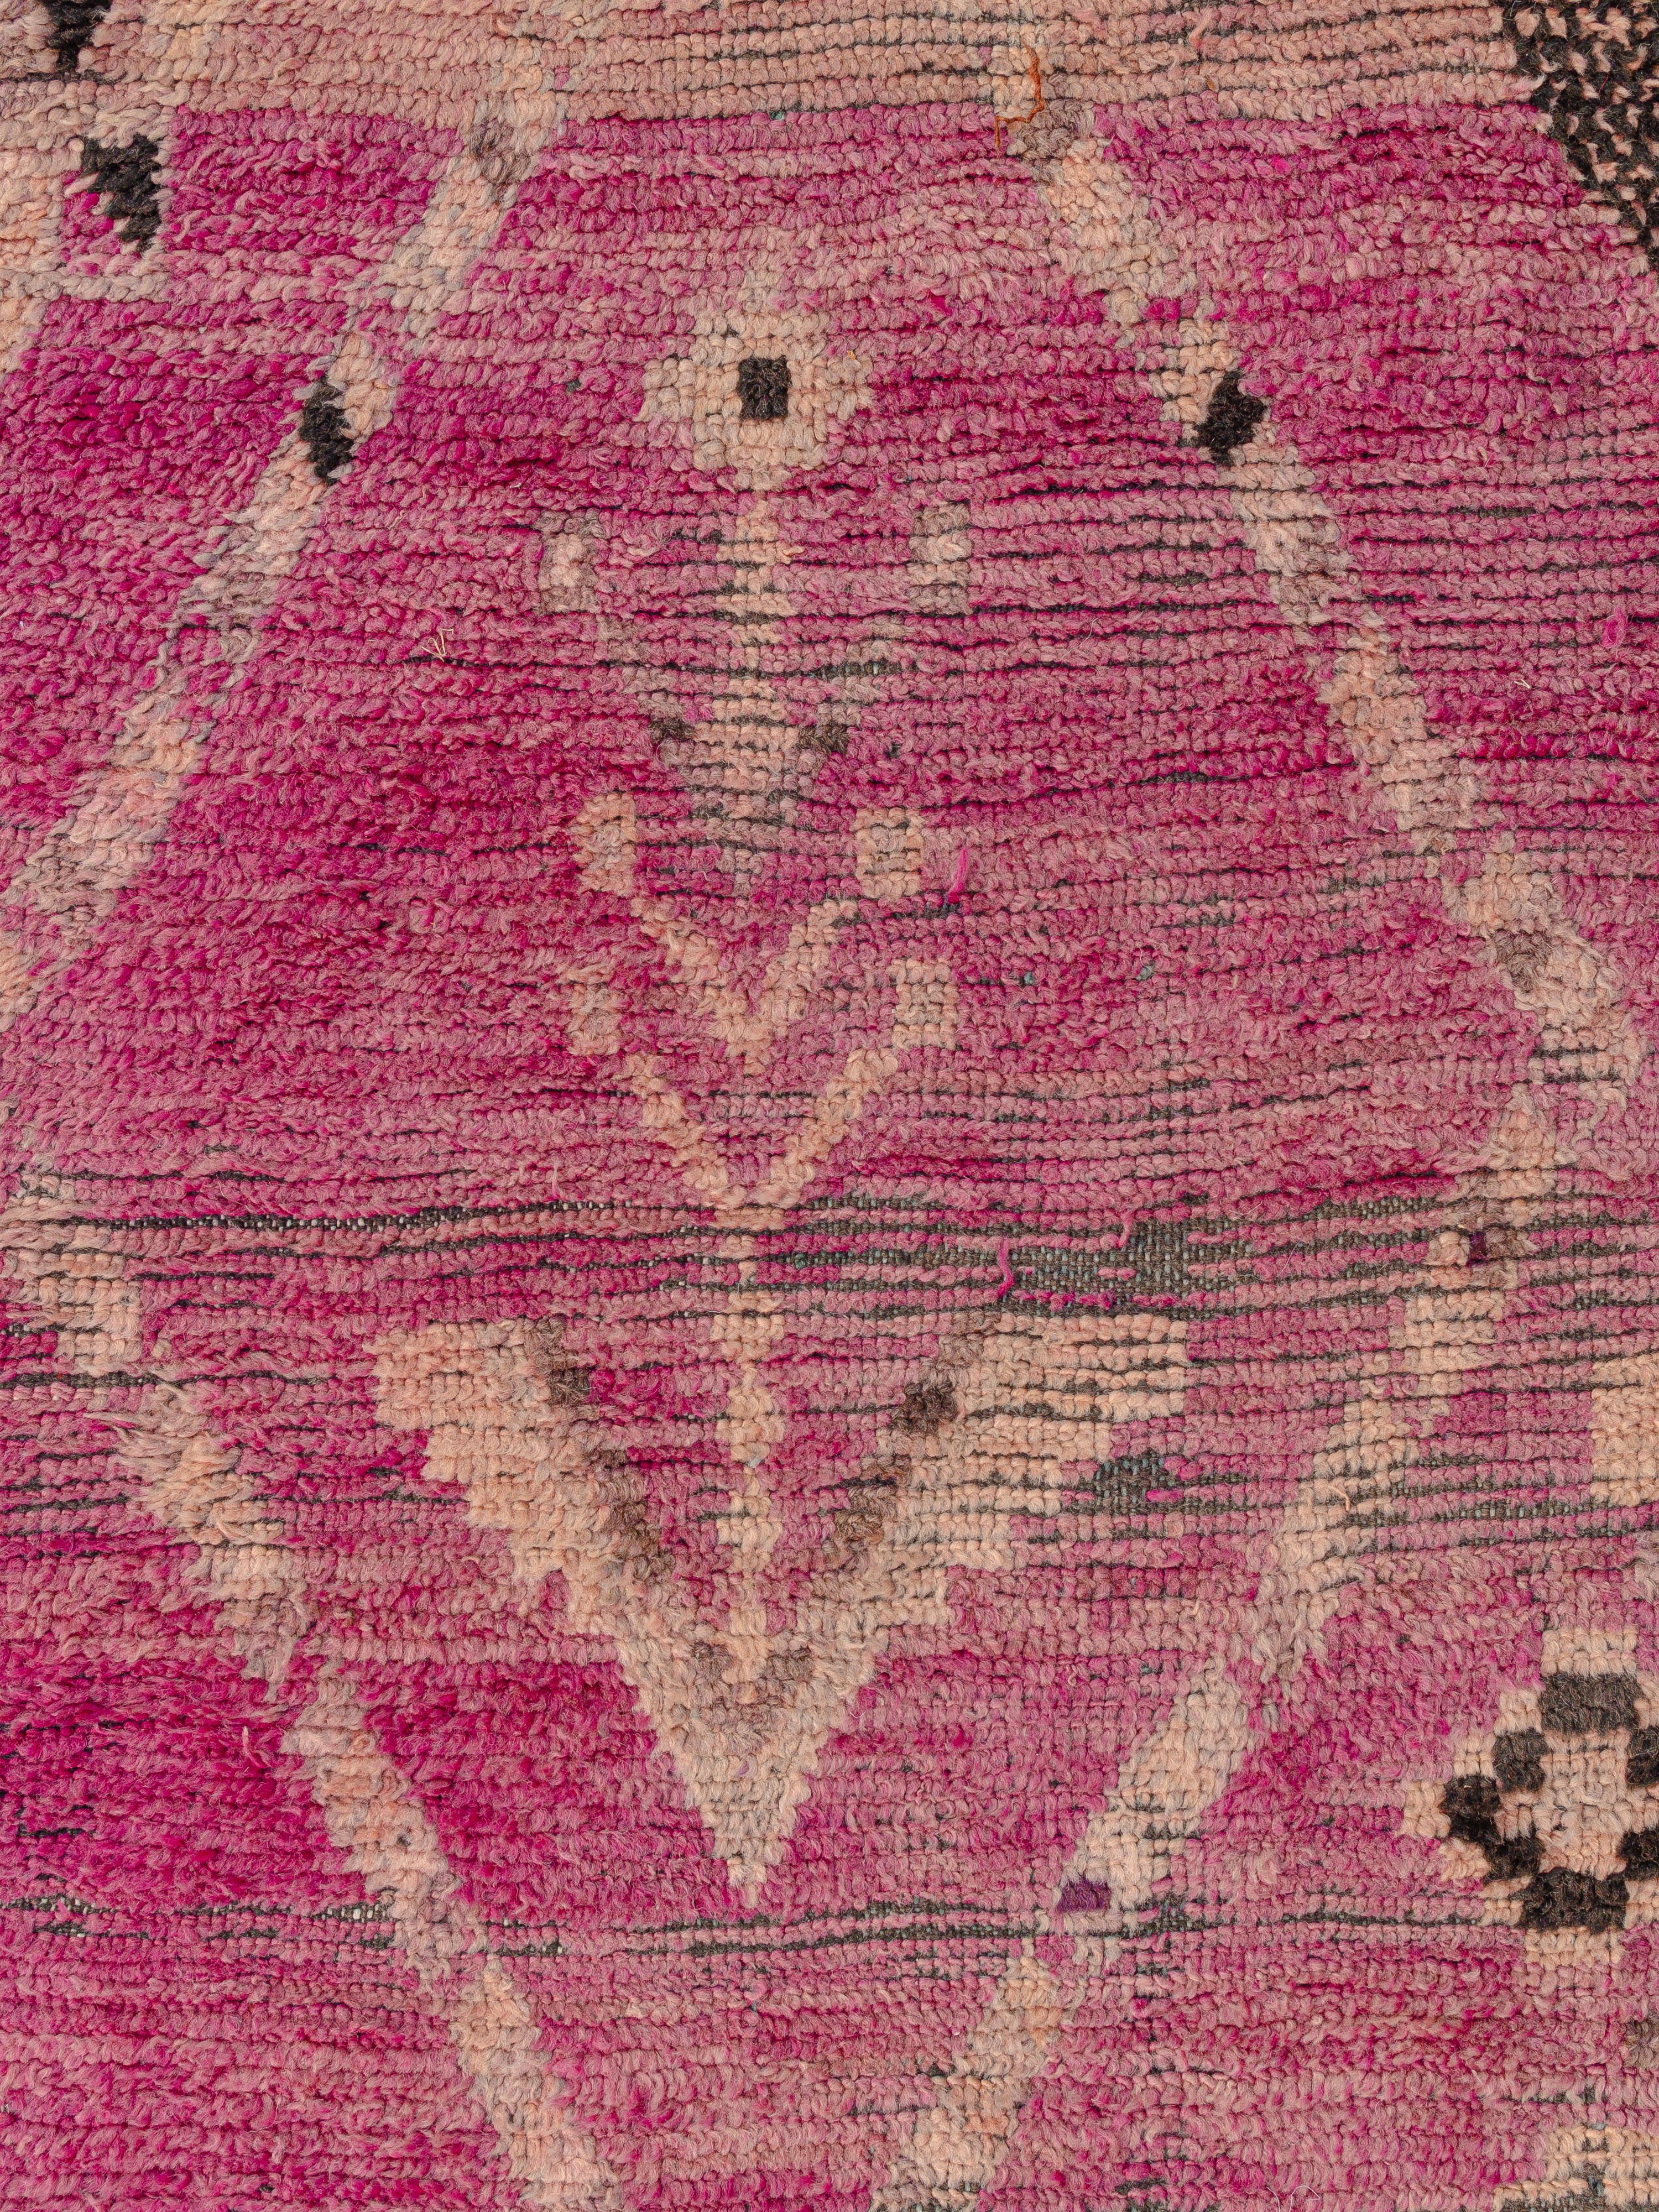 Ein faszinierender Teppich aus dem Flachland südwestlich von Marrakesch mit viel Charakter und einer sehr beliebten Patina. Zwei gegensätzliche Doppelaxtmotive nahe der Mitte der Komposition spiegeln eine Harmonie zwischen männlicher und weiblicher